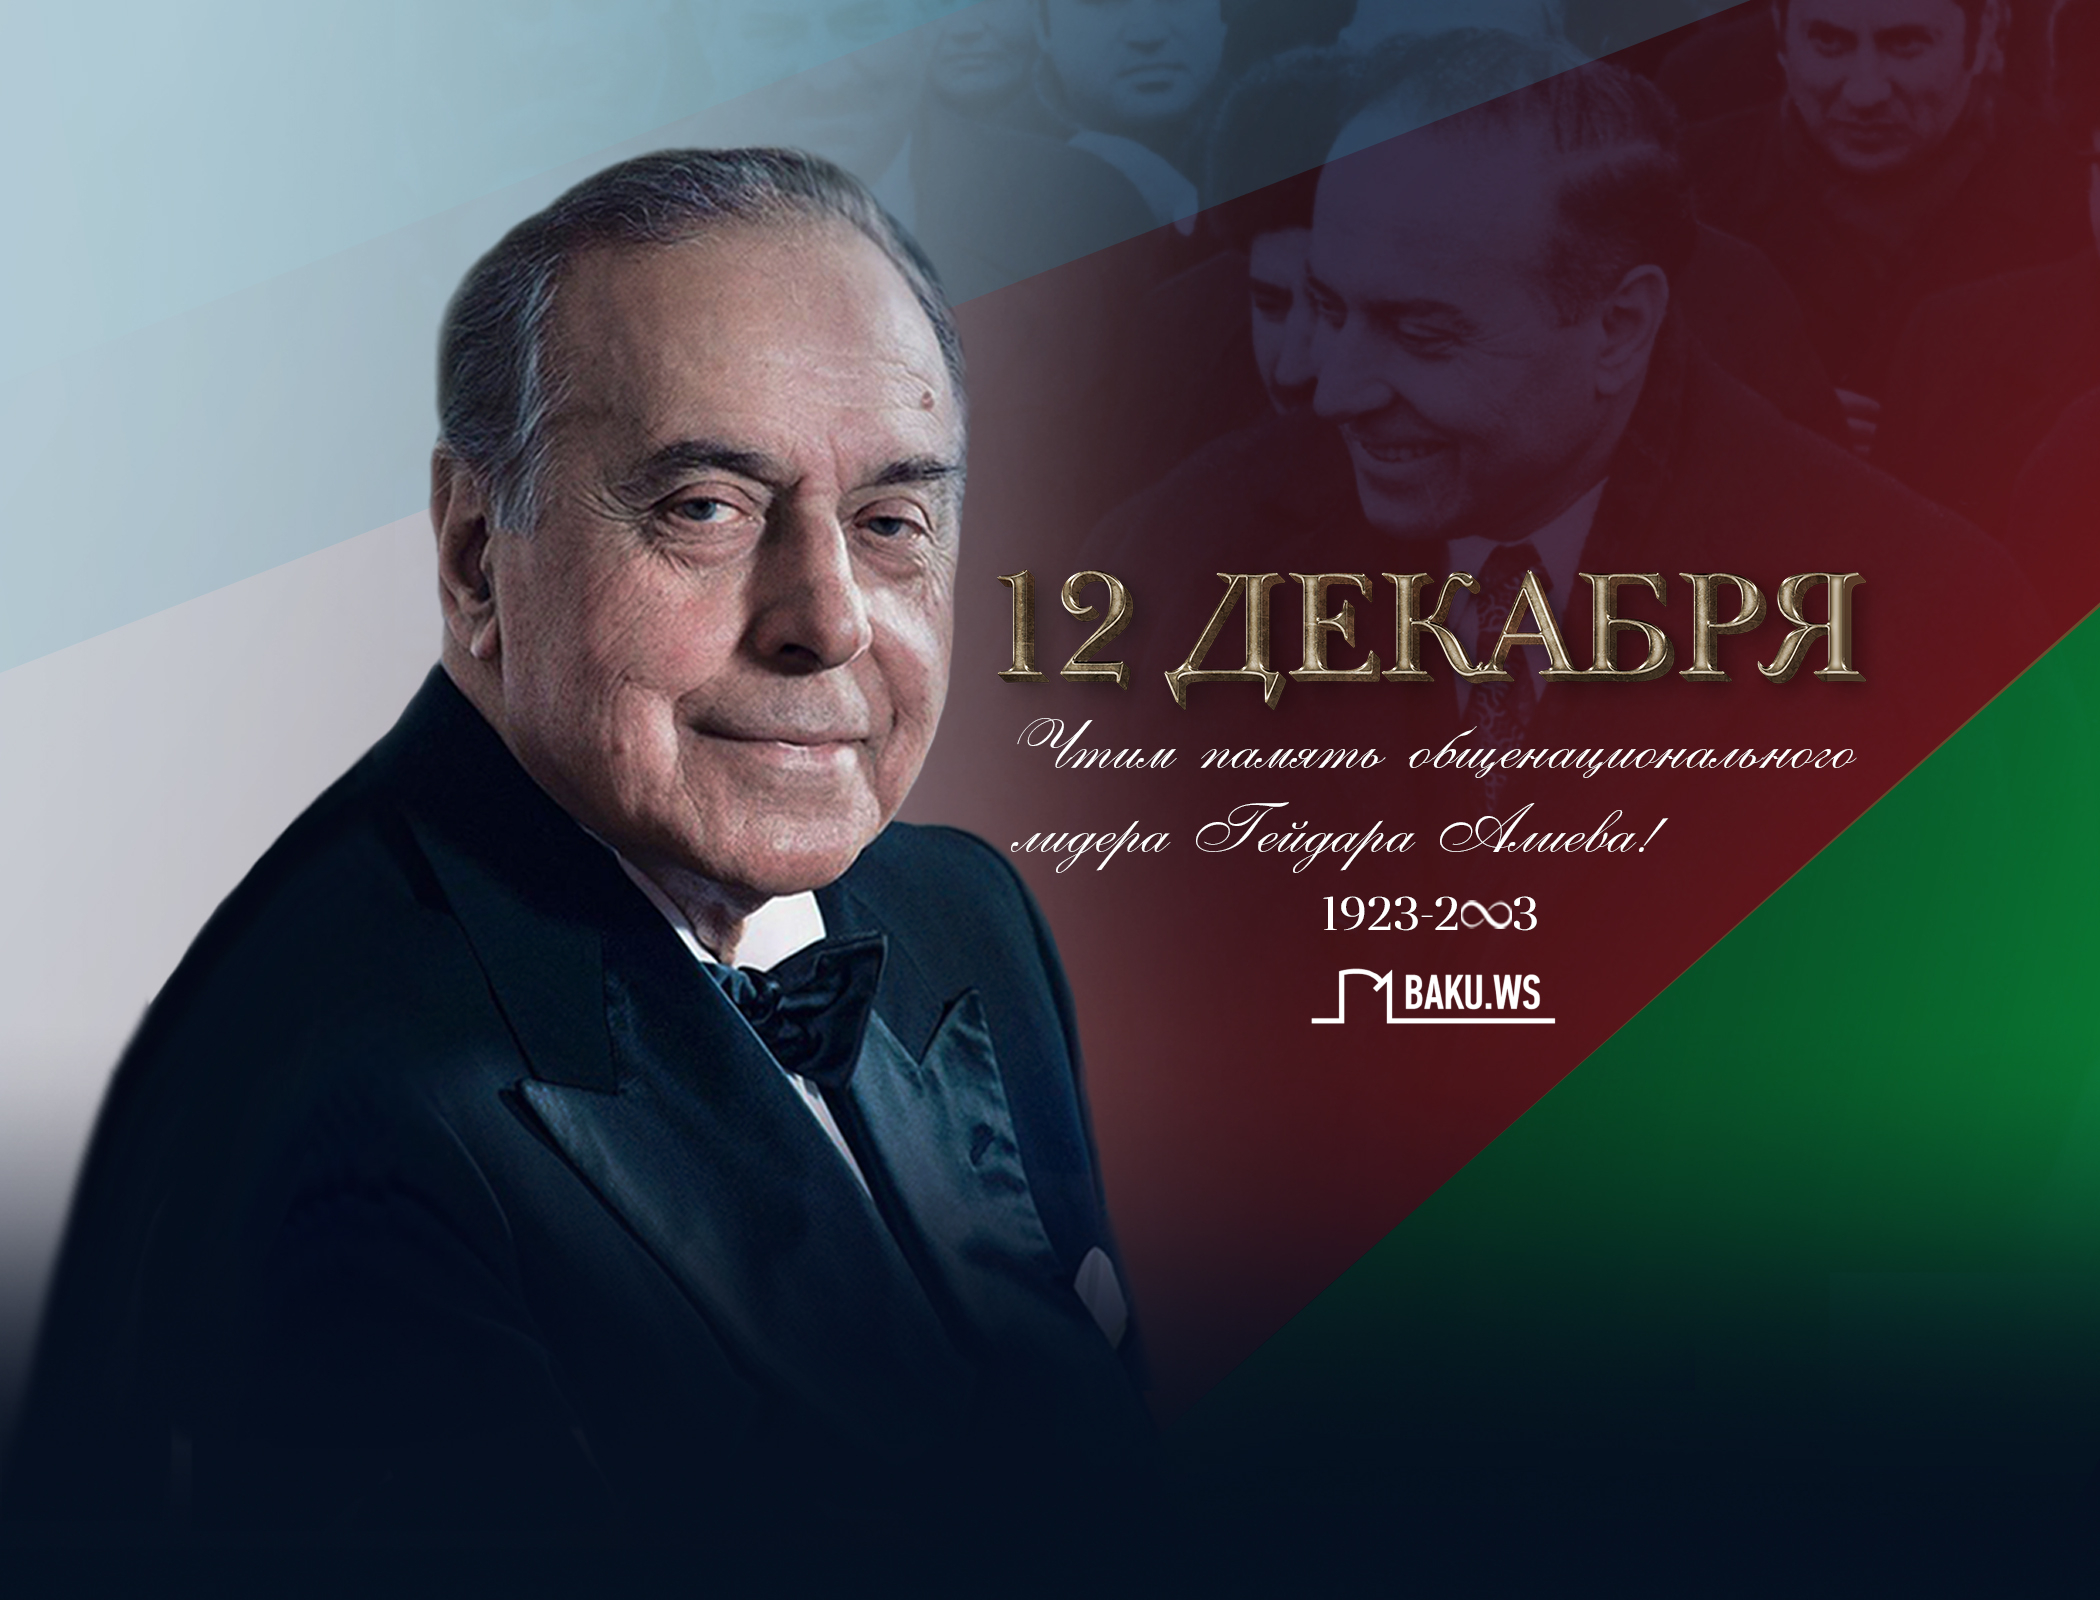 Азербайджан чтит память общенационального лидера Гейдара Алиева